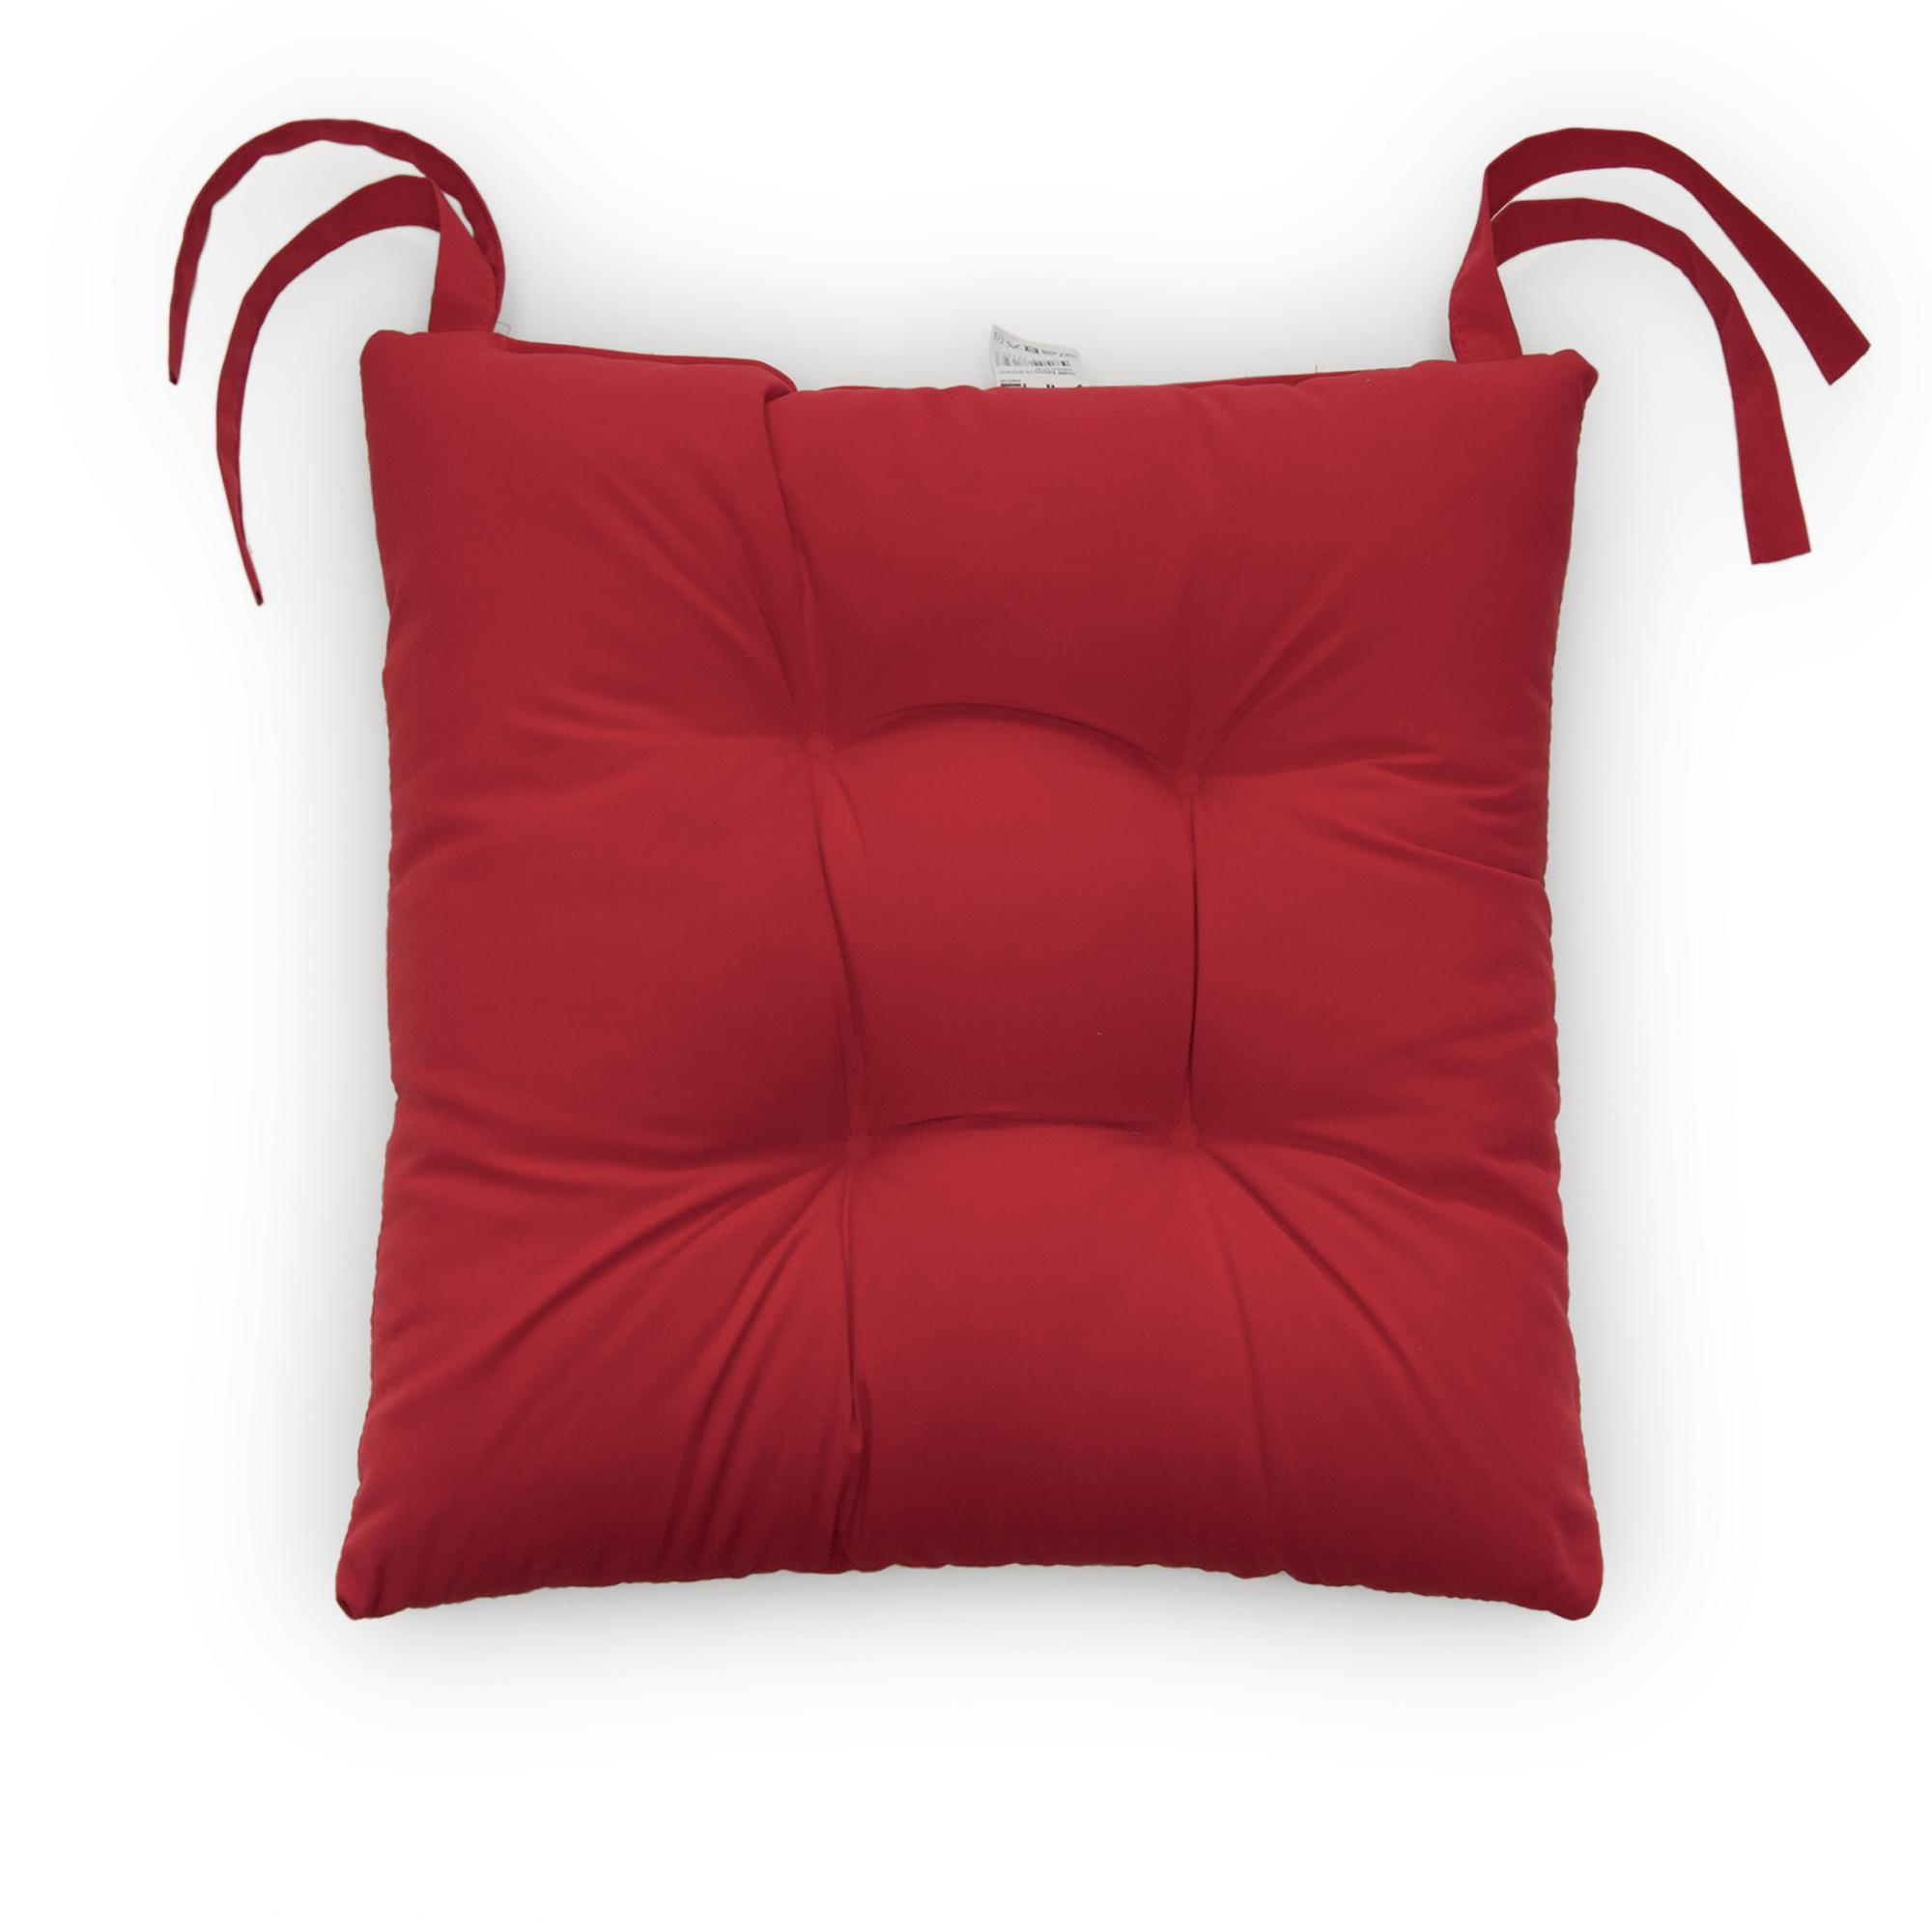 Iris Home Sandalye Minderi (Kırmızı) - 40x40 cm